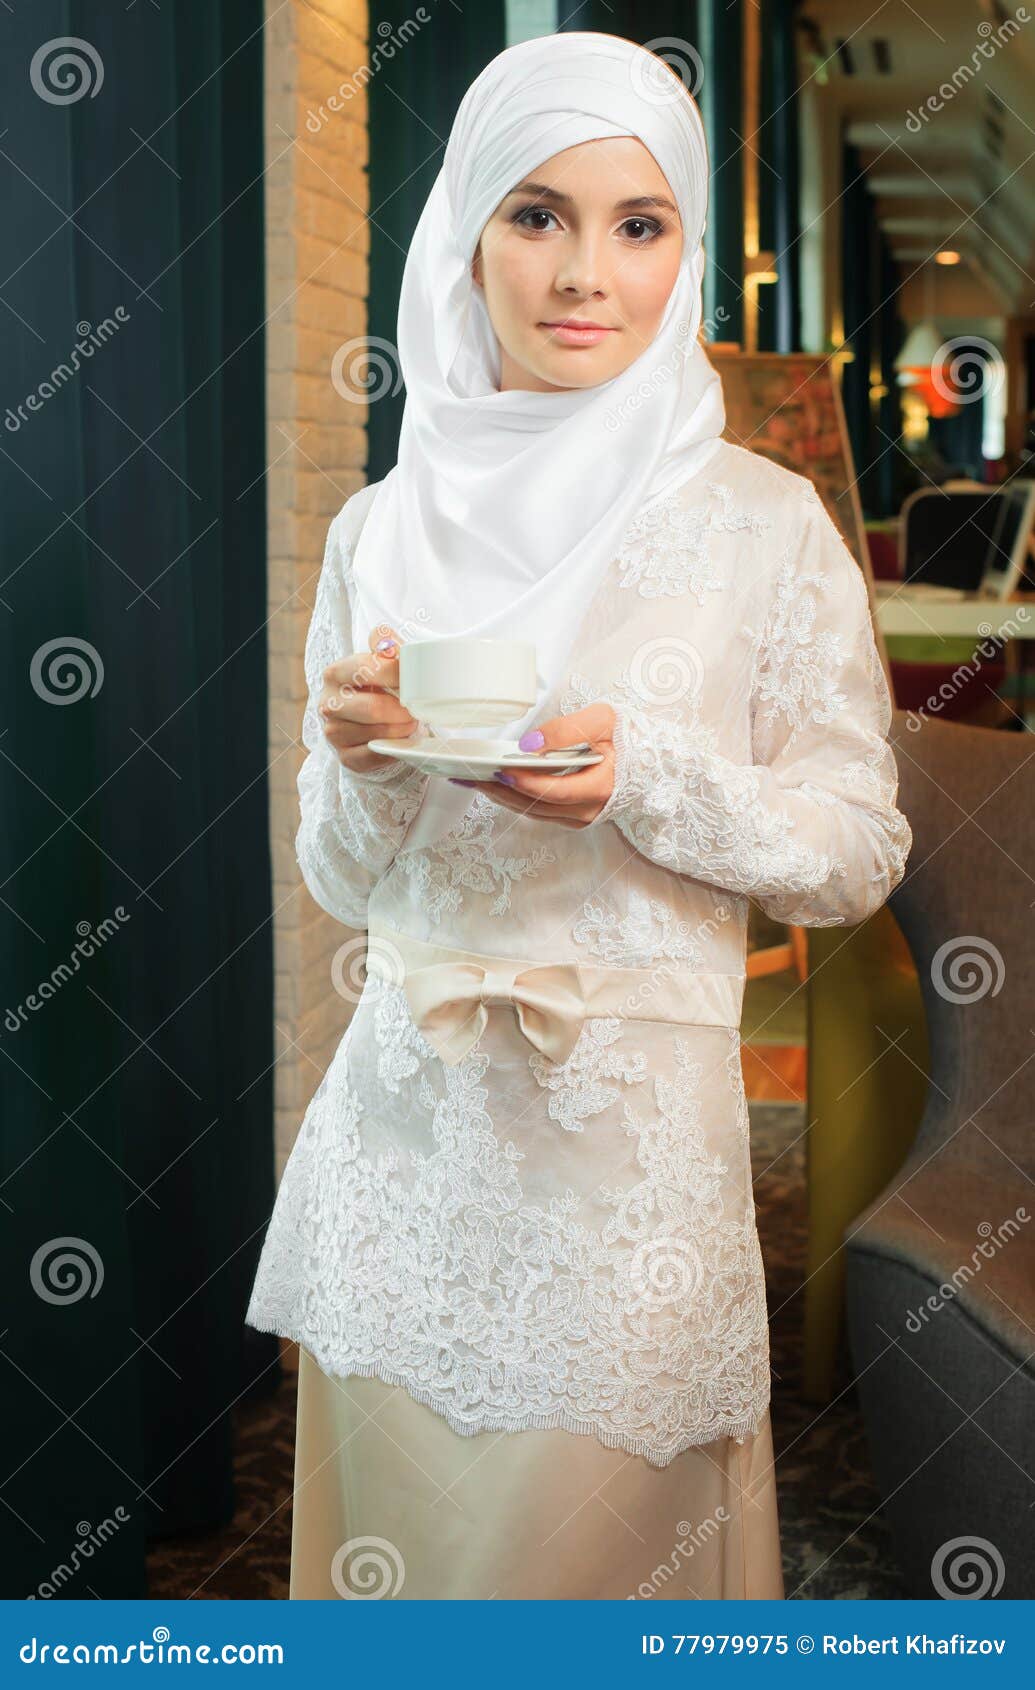 Vestiti Da Sposa Hotel Oriente.Donna Musulmana In Un Vestito Da Sposa Bianco Con Una Tazza Di Te